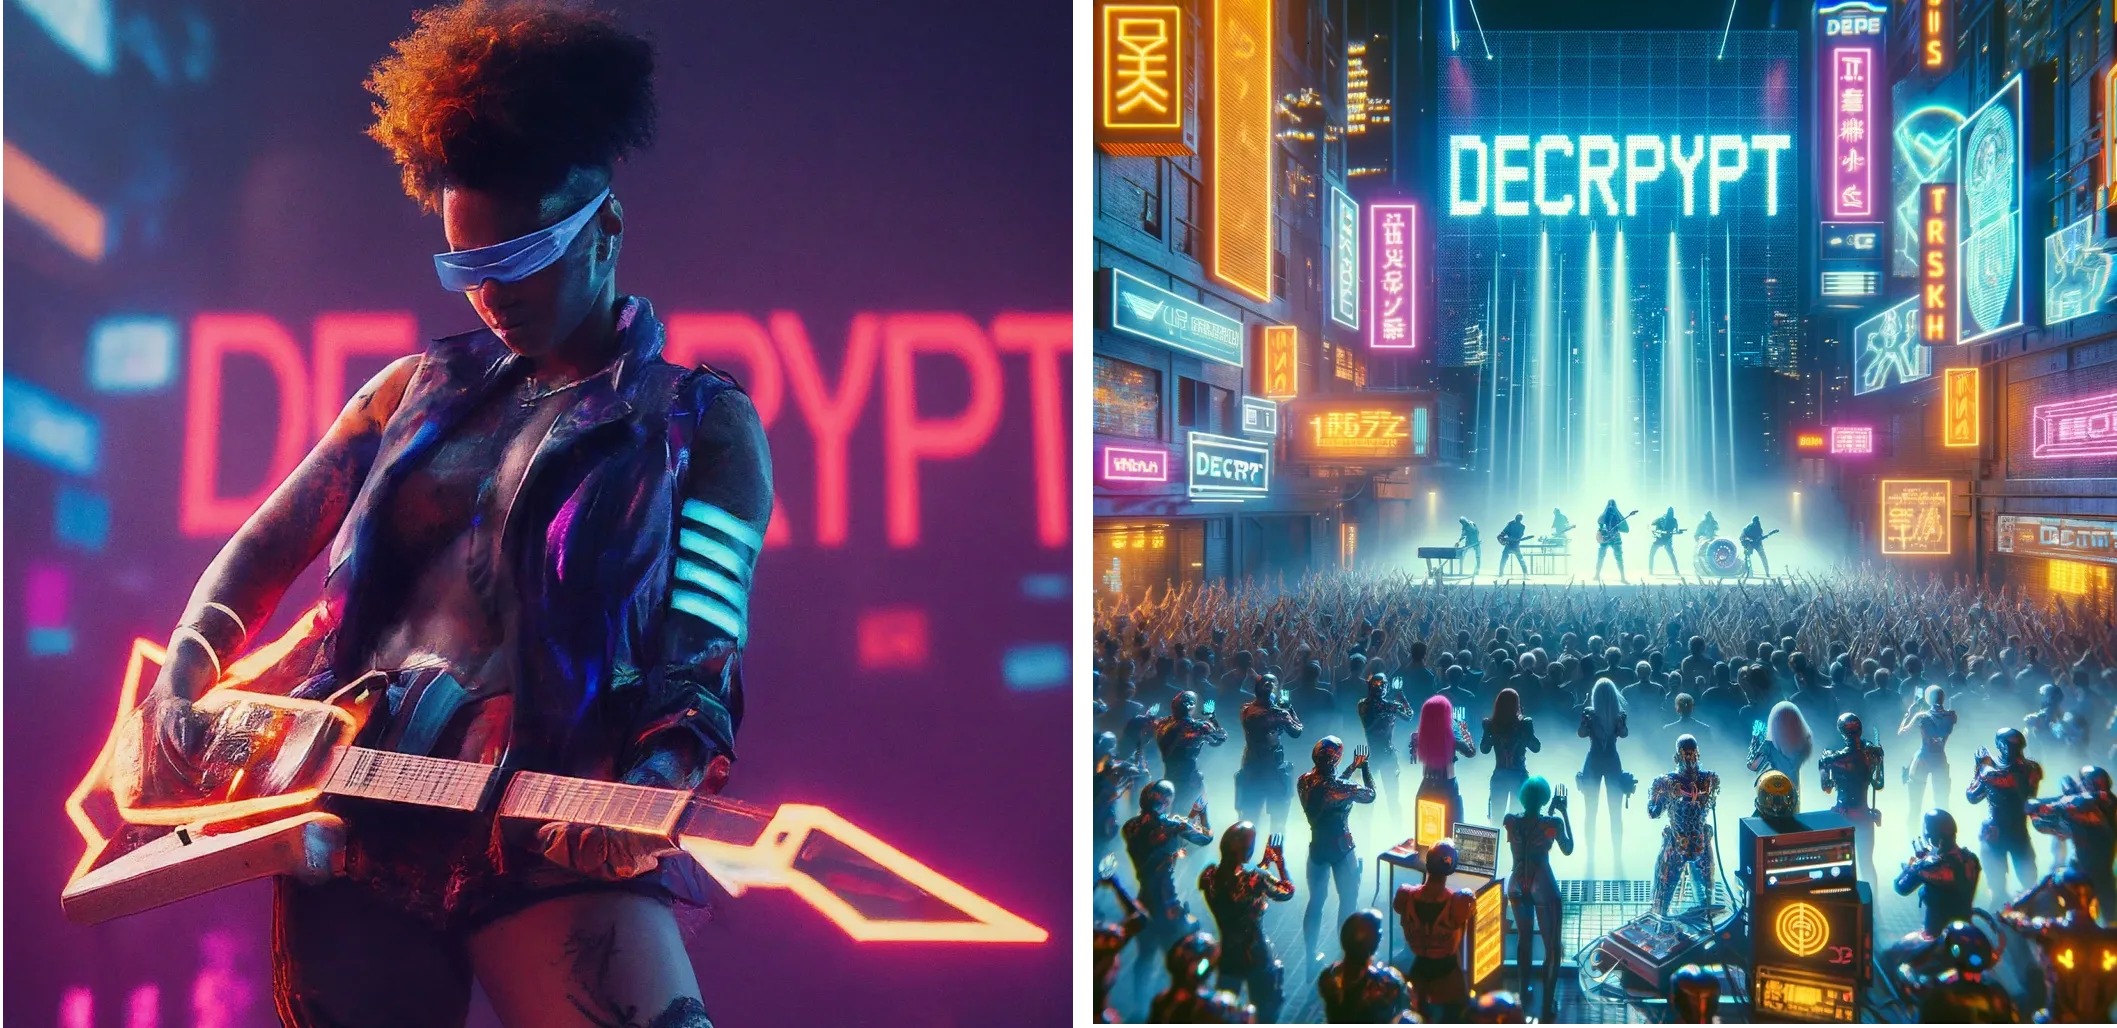 אמן עתידני סייברפאנק מופיע על הבמה עם המילה "DECRYPT" באורות ניאון ברקע. תאומים (משמאל) לעומת ChatGPT Plus (ימין)